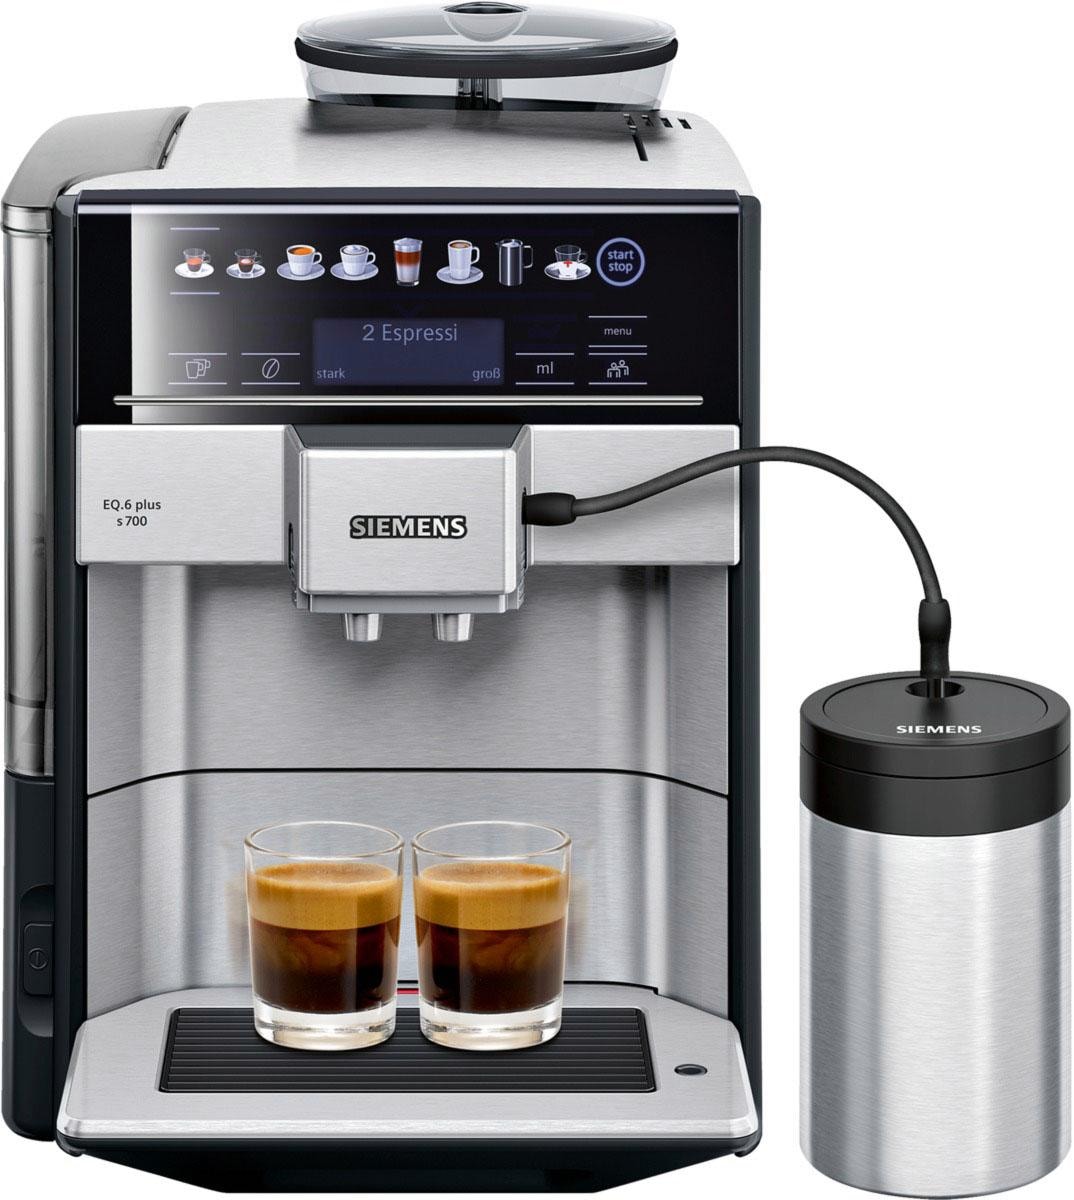 SIEMENS Kaffeevollautomat »EQ.6 plus inkl. 4 autom. Shop Online im Milchbehälter isolierter Favoriten, bis zu OTTO Reinigung, TE657M03DE«, s700